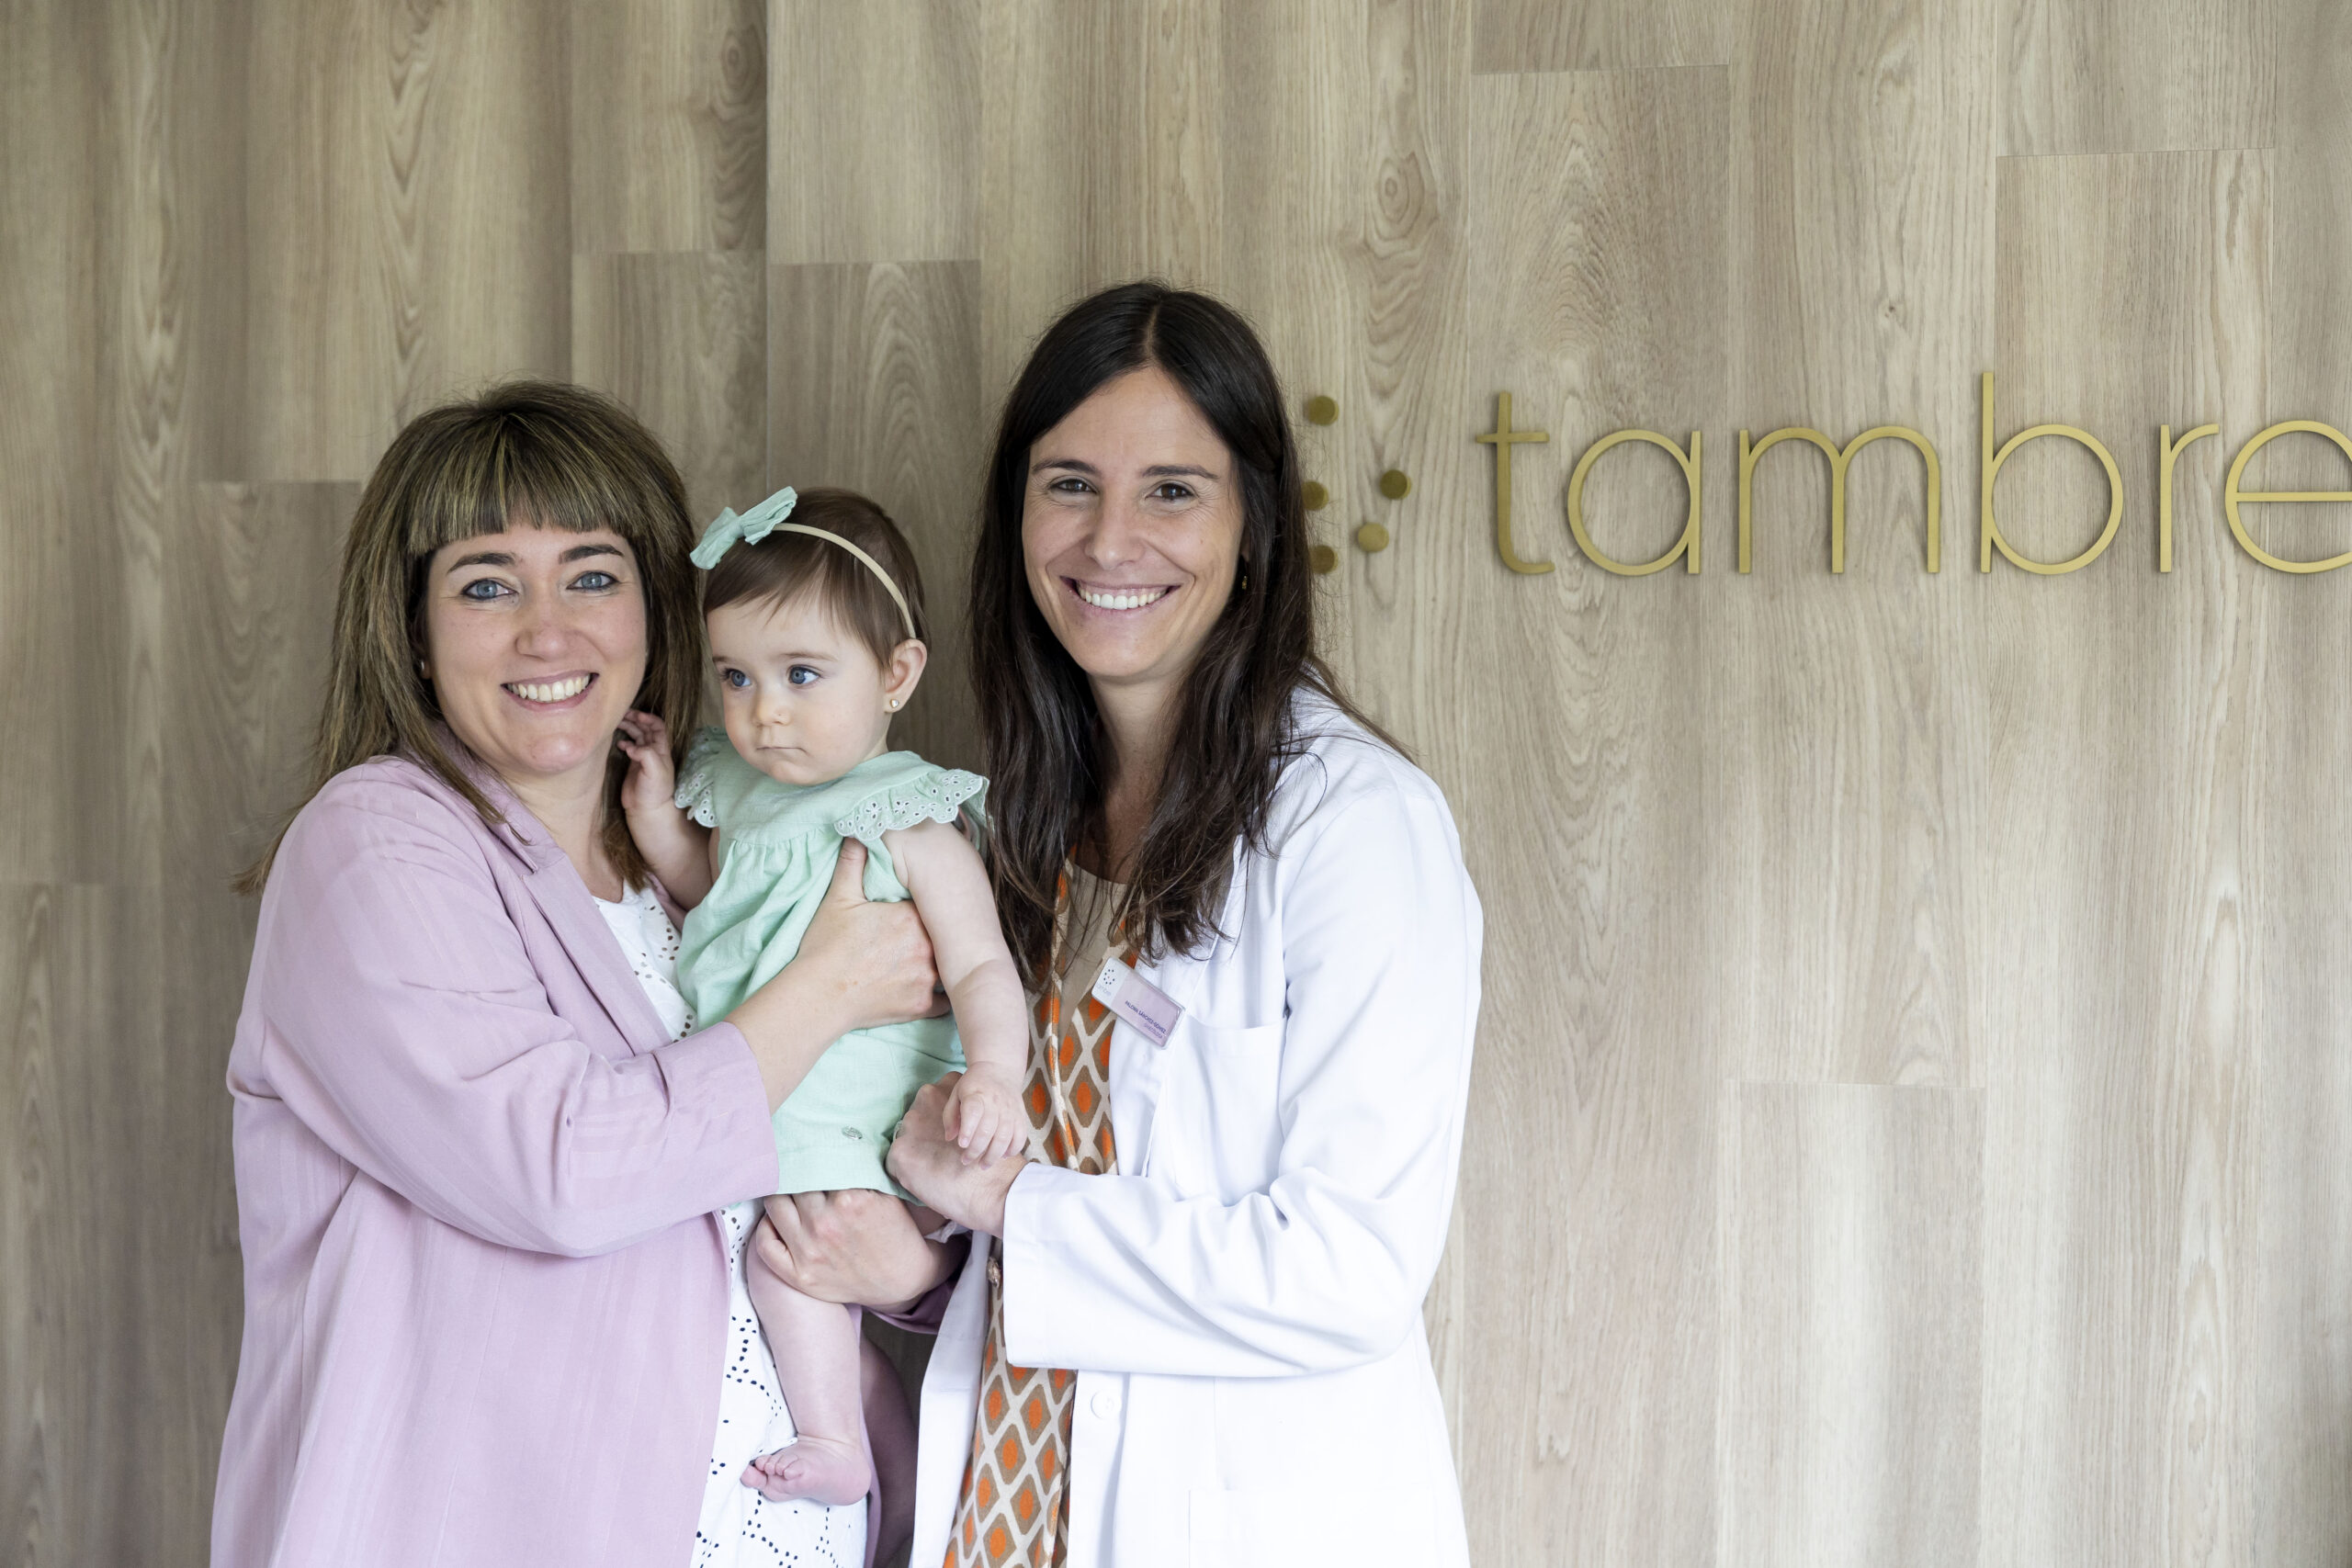 La doctora Paloma Sánchez-Gómez junto a su paciente Almudena y la bebé Vega, de 8 meses.